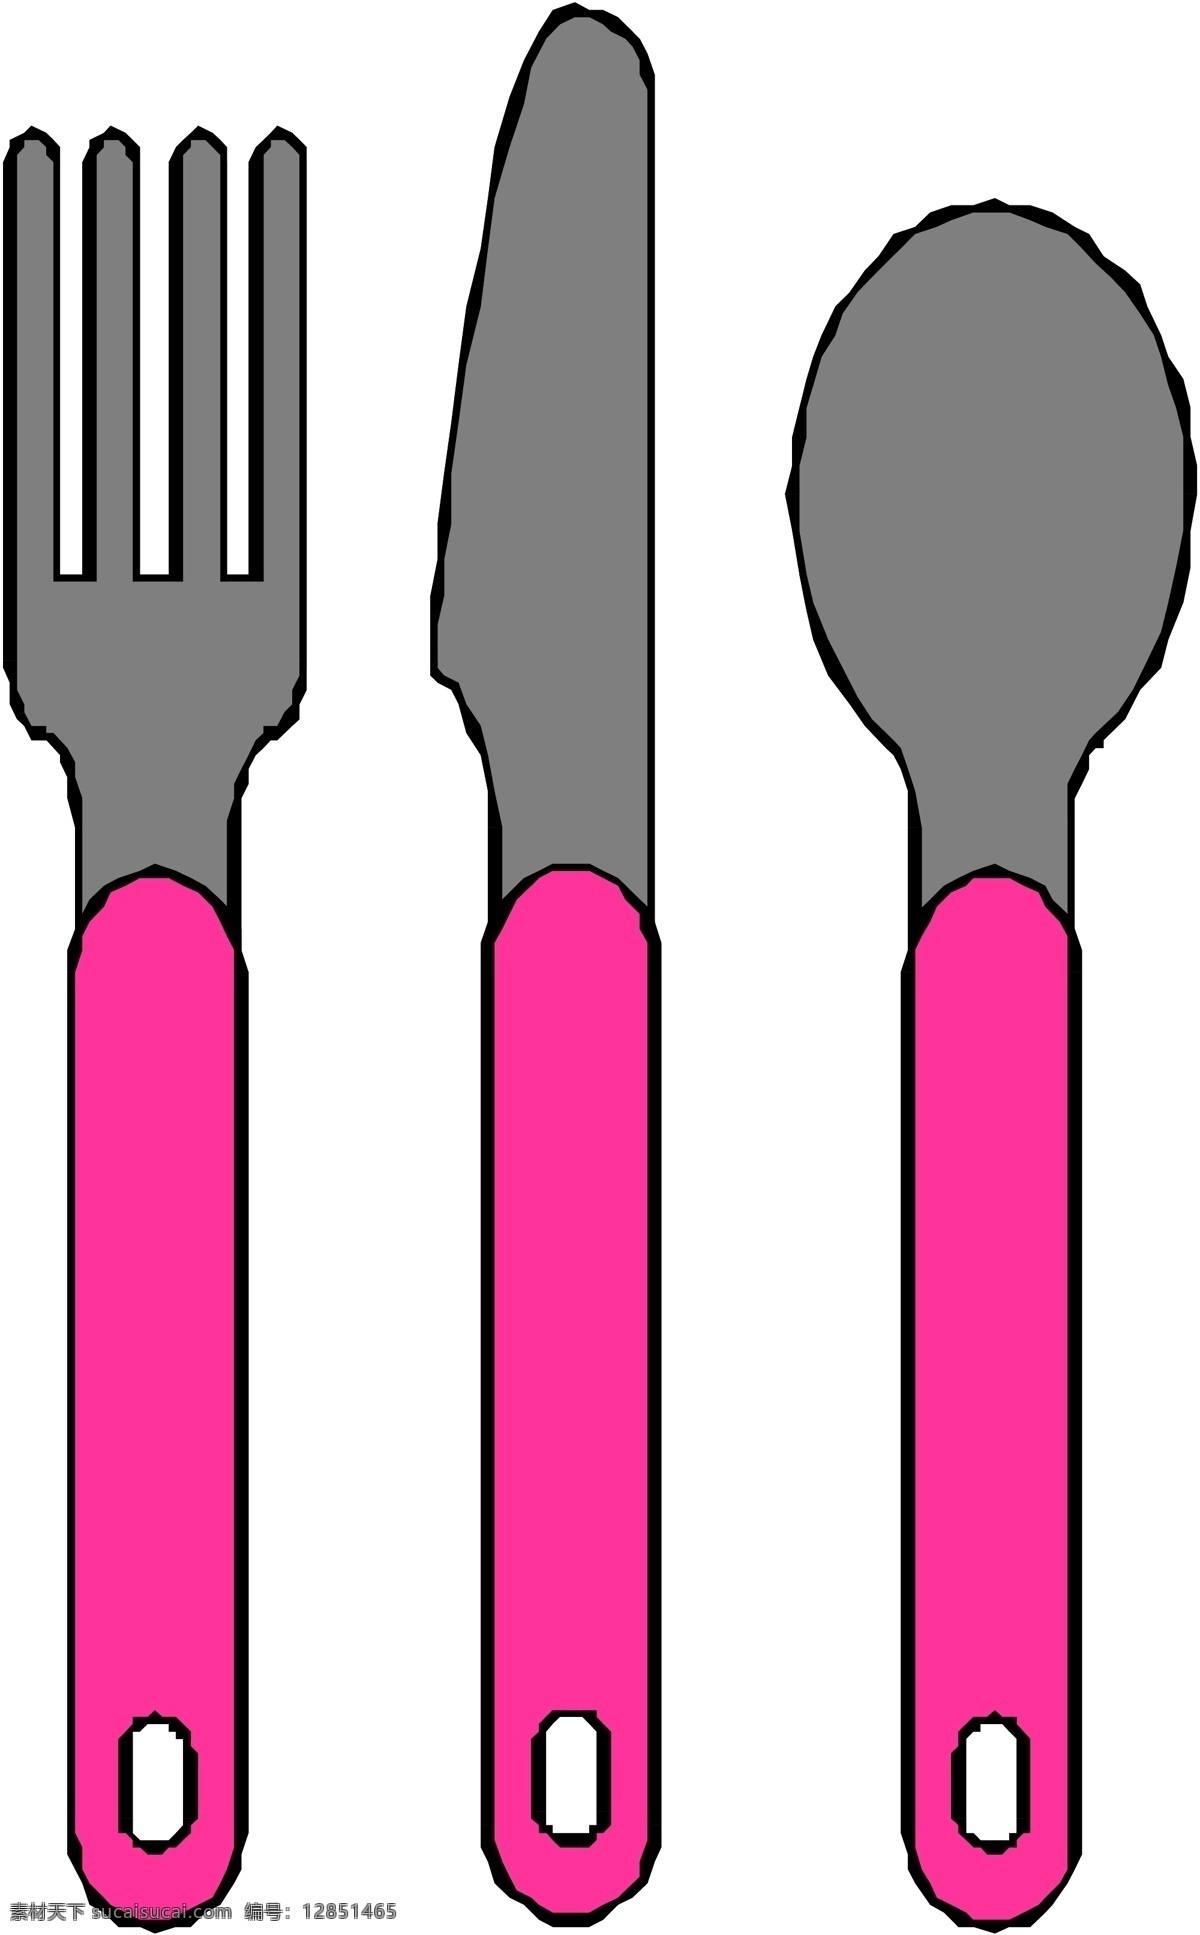 锅 具 碗 筷子 刀具 商业矢量 矢量下载 网页矢量 矢量用具 矢量图 其他矢量图